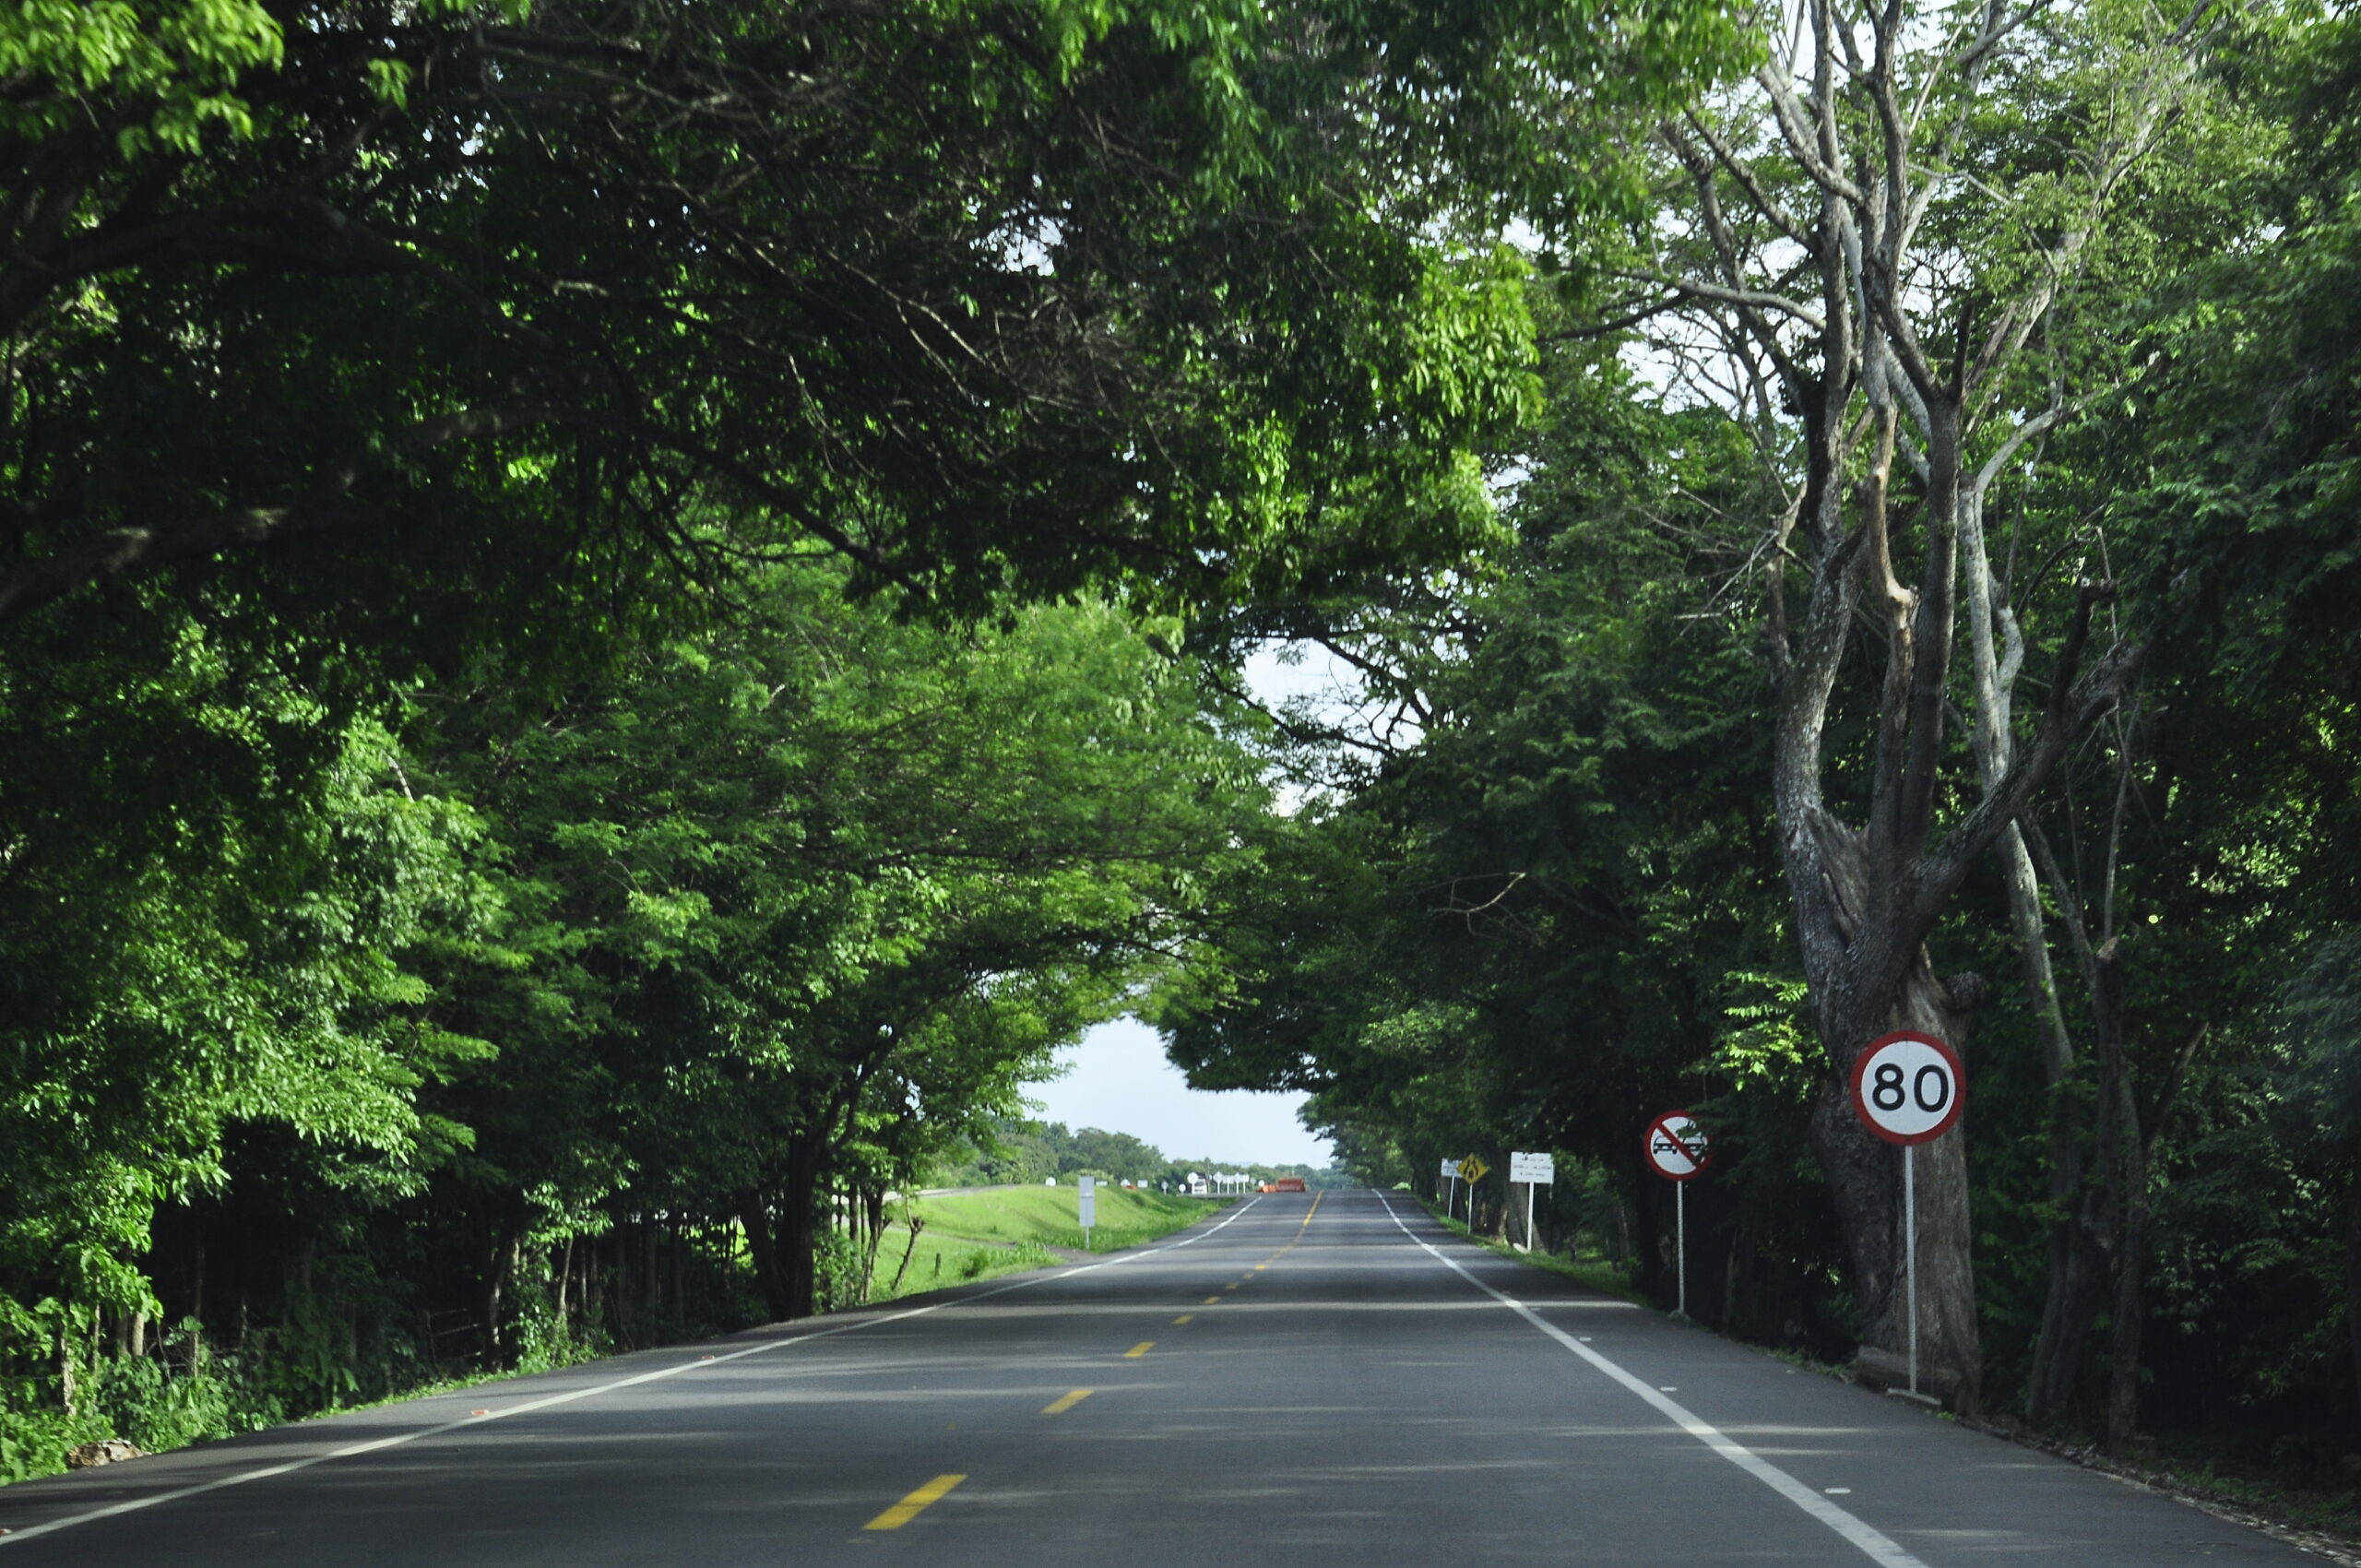  Los objetos fijos a un costado de la vía, entre esos los árboles, podrían aumentar la letalidad en los accidentes de tránsito  Foto: Joaquín Ramírez. 